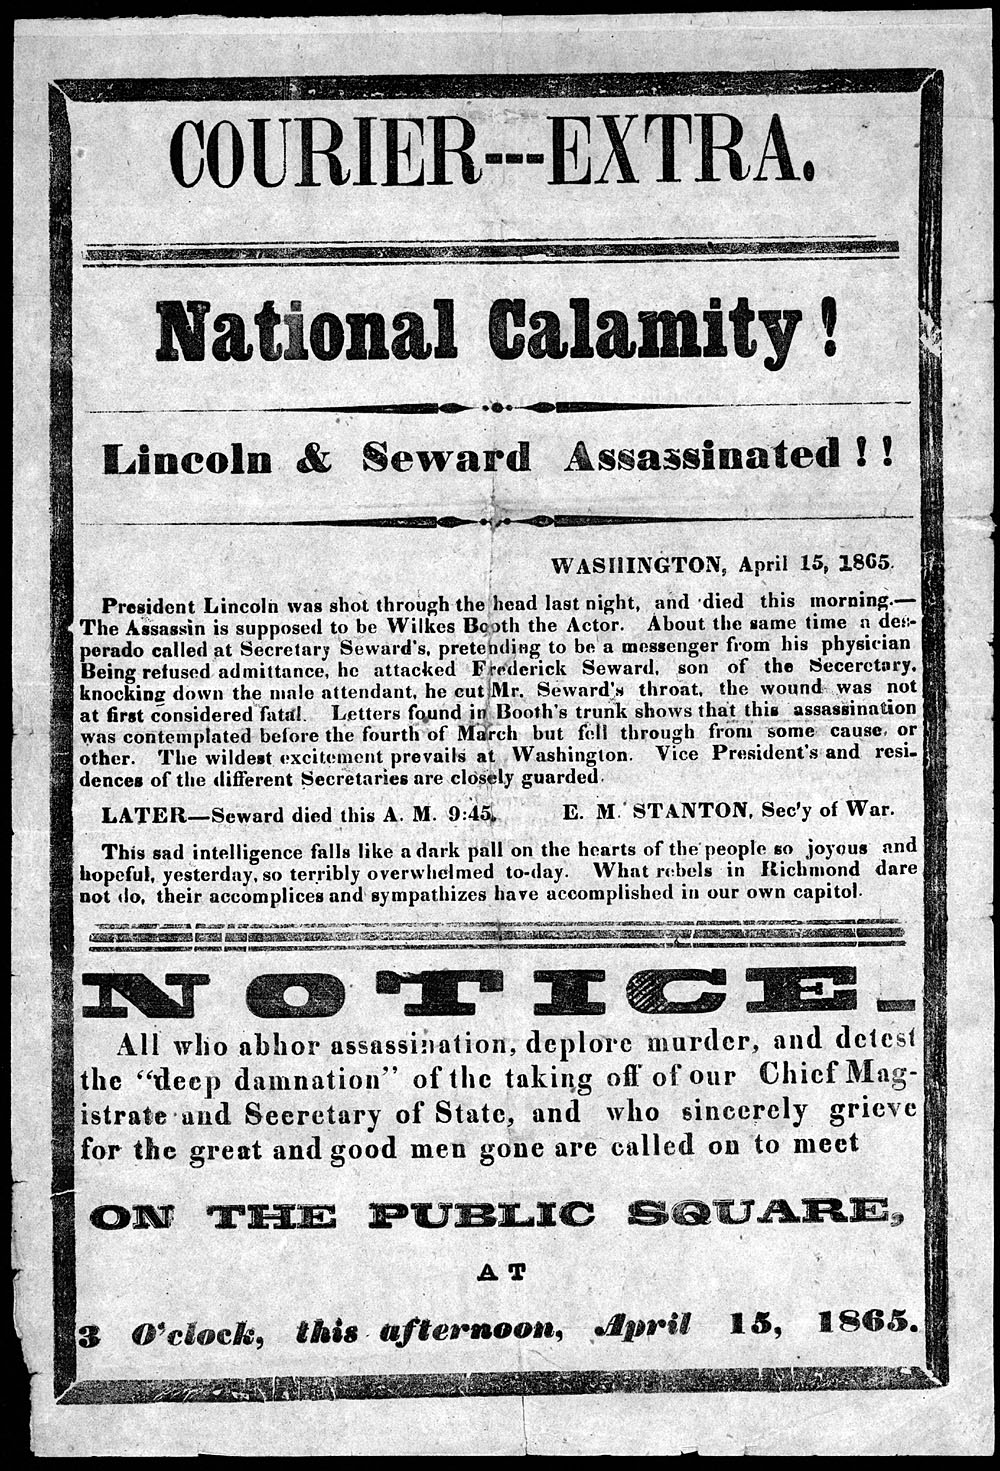 National calamity! Lincoln and Seward assassinated